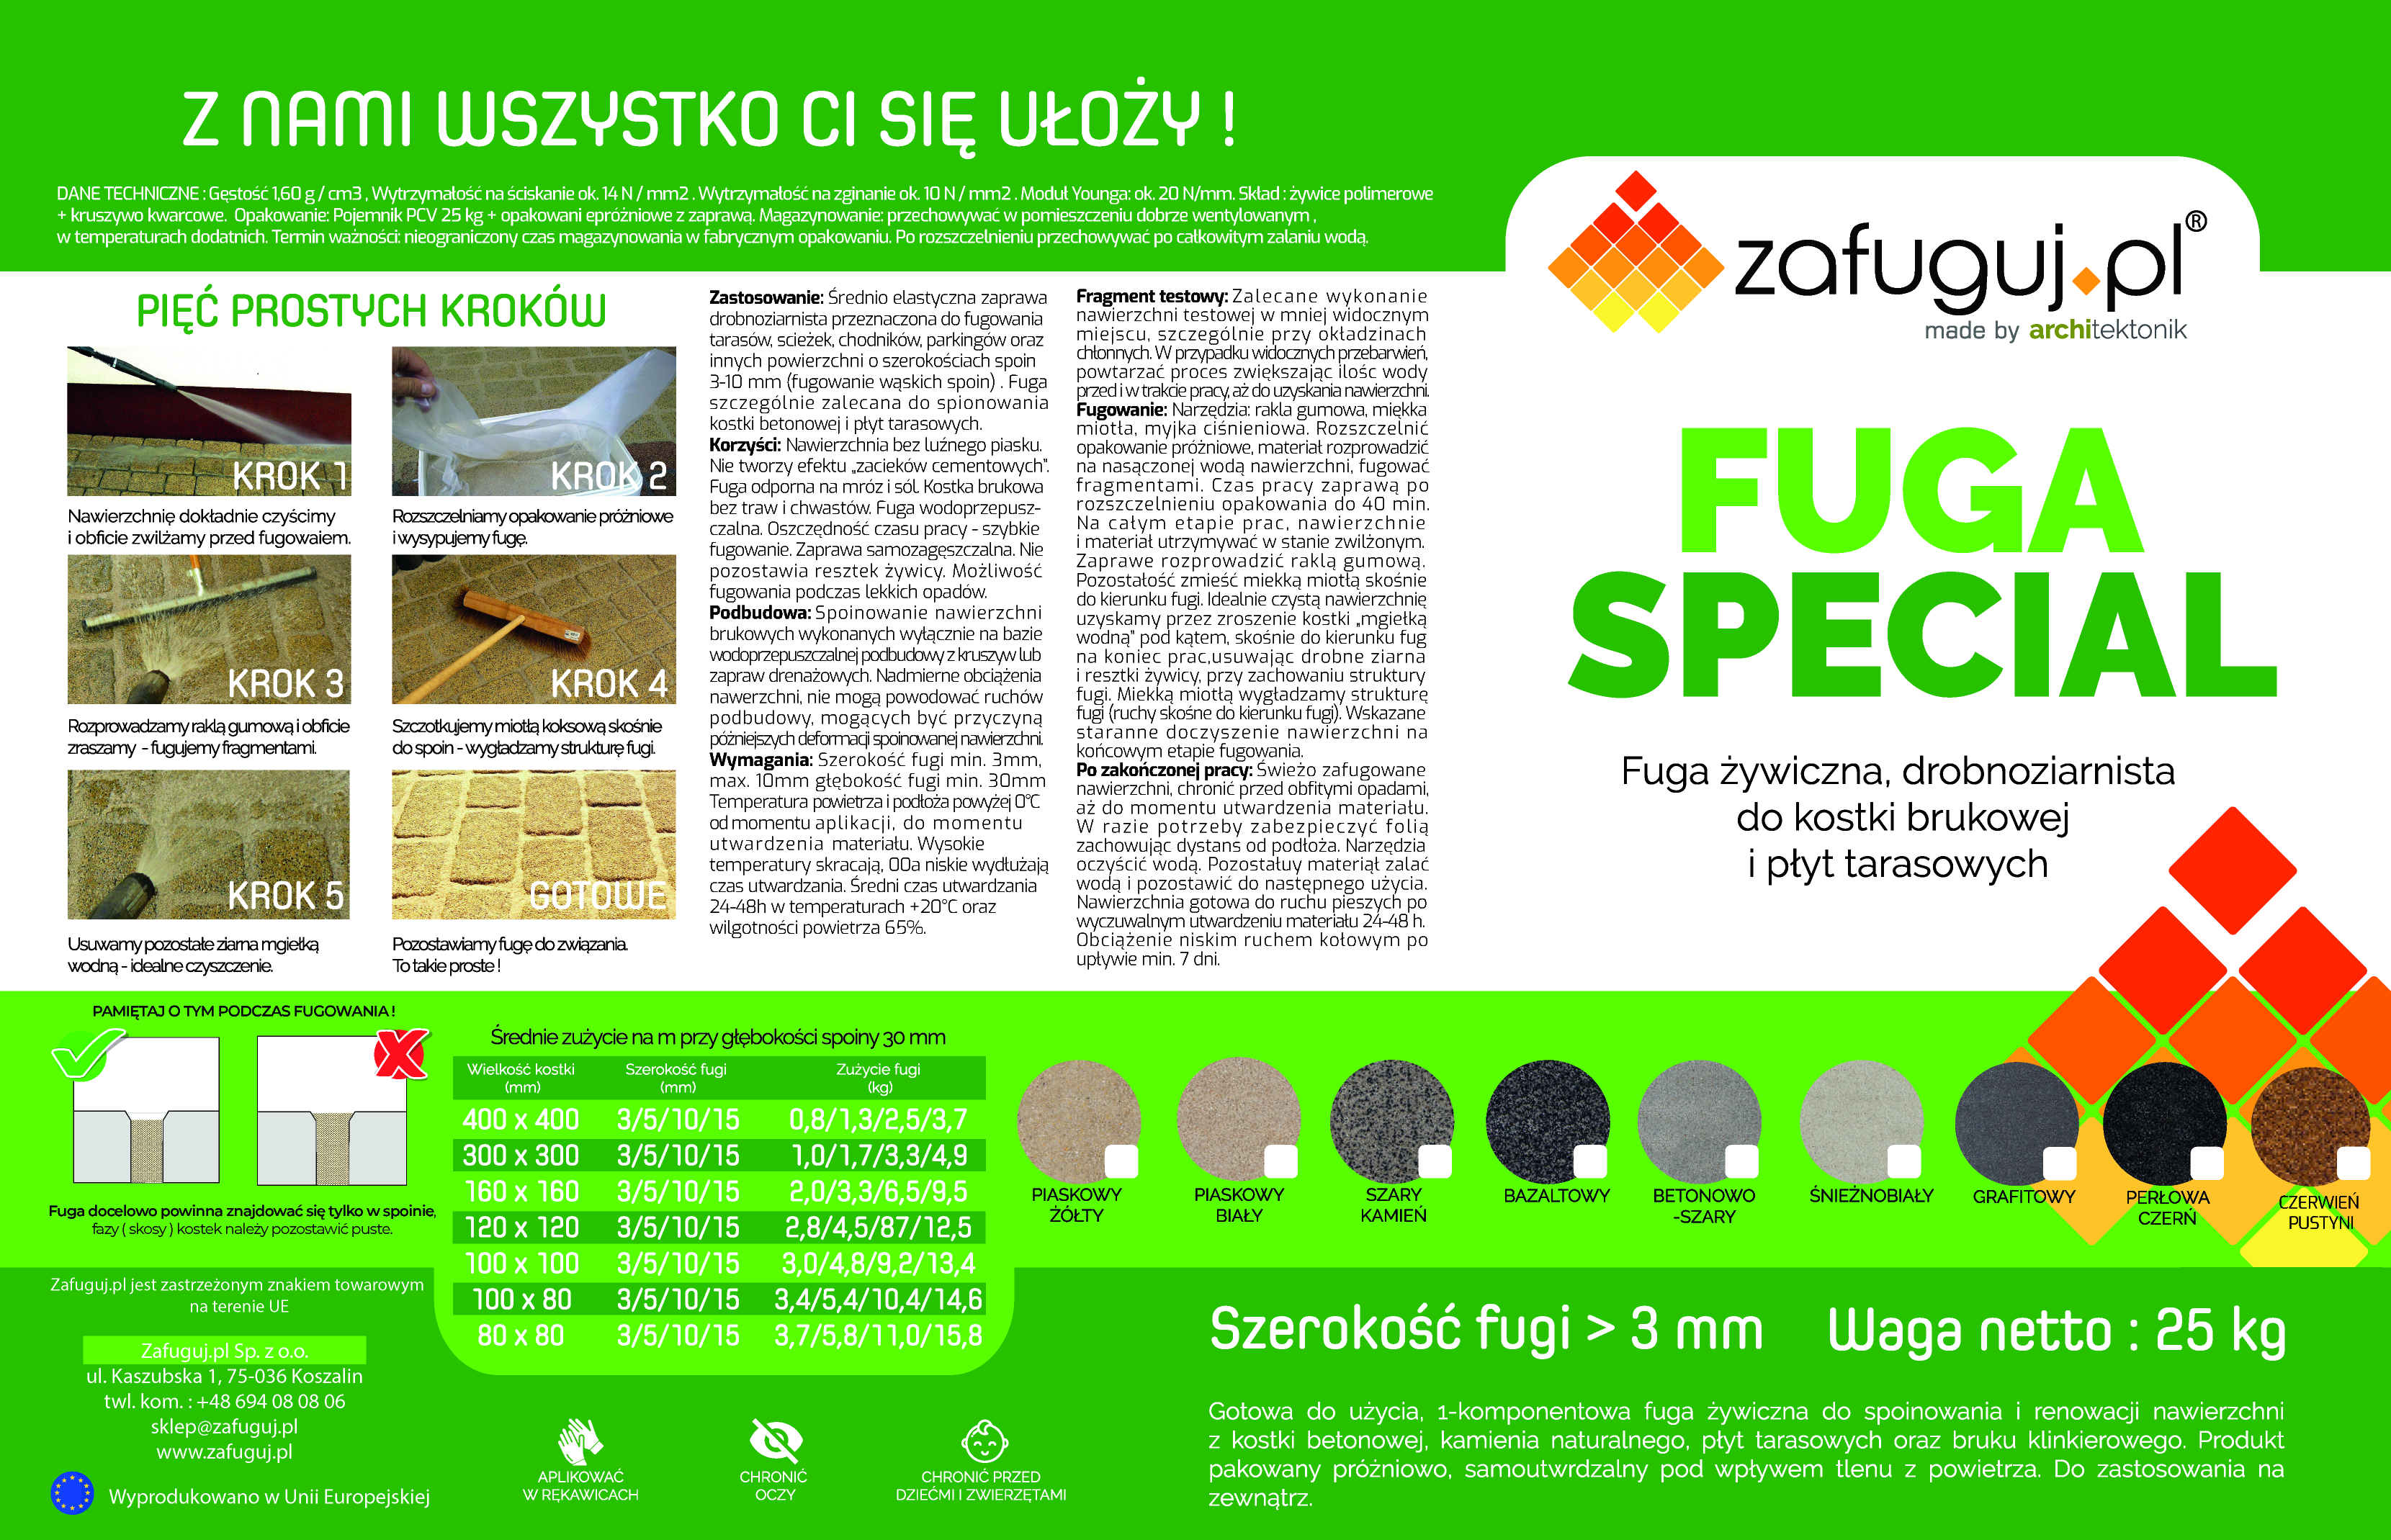 Etykieta fugi special fuga zywiczna do kostki brukowej betonowej Limitowana kolory